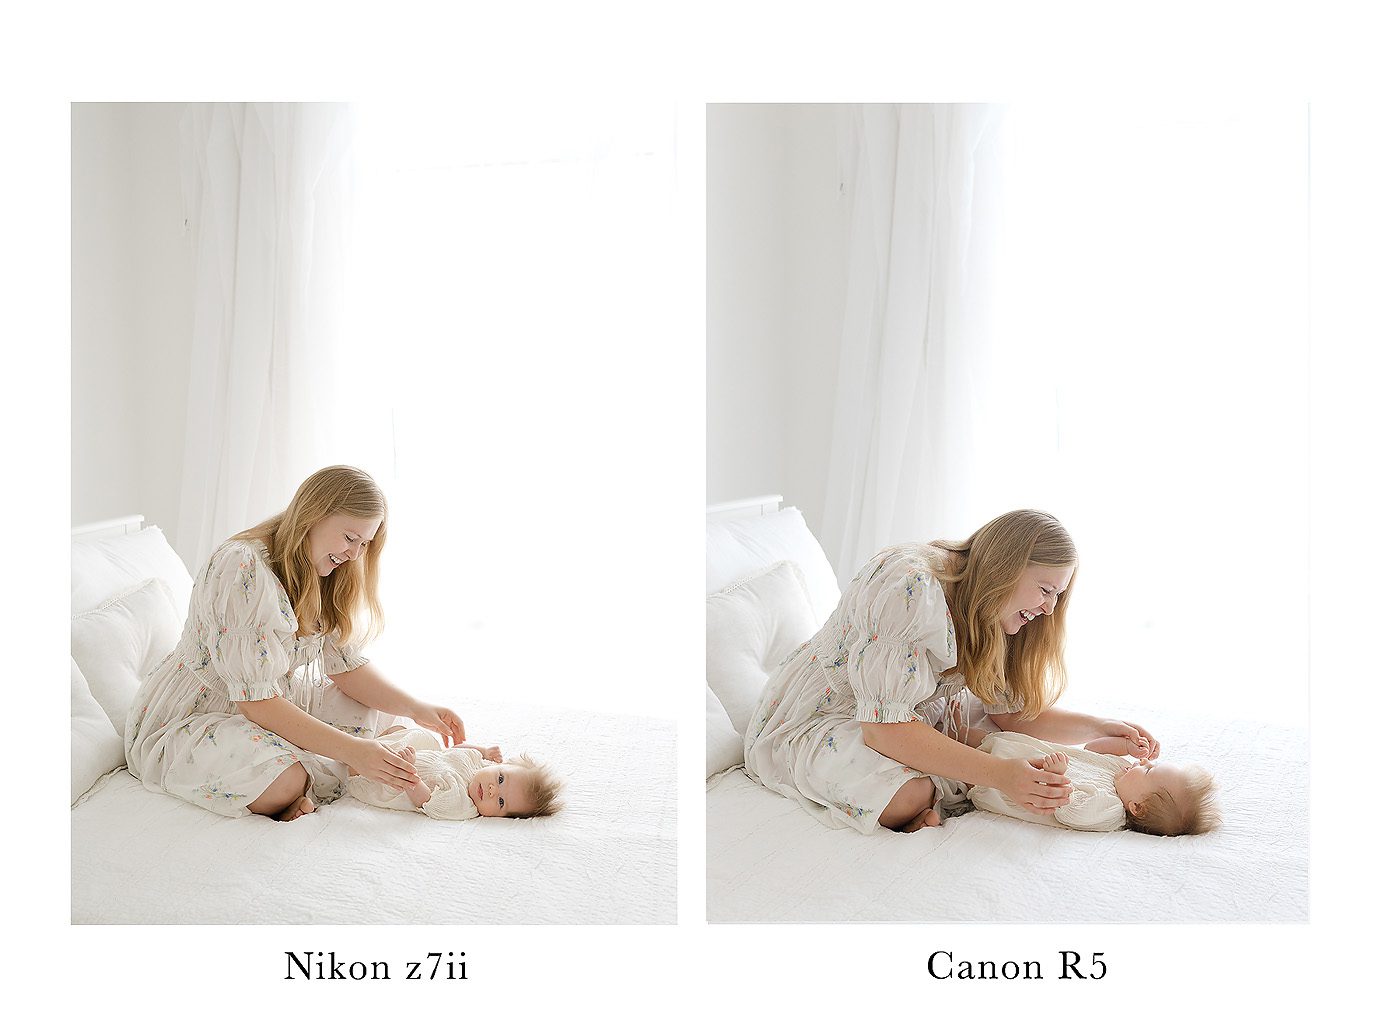 Nikon z7II vs Canon r5 photo comparisons with refined II edits